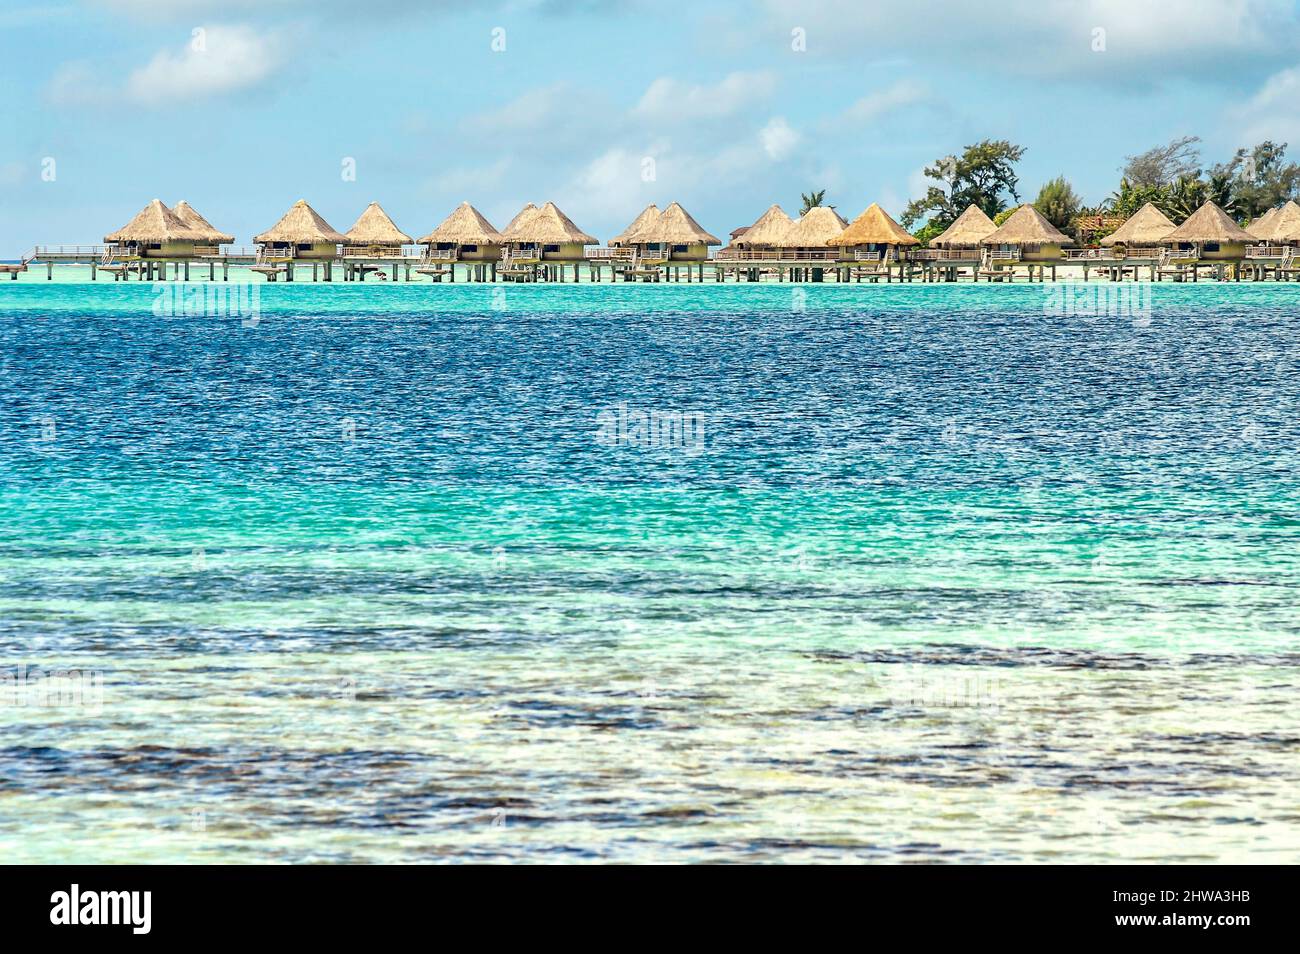 Complexe de luxe situé sur une île au bord d'un lagon, à Bora Bora, Polynésie française Banque D'Images